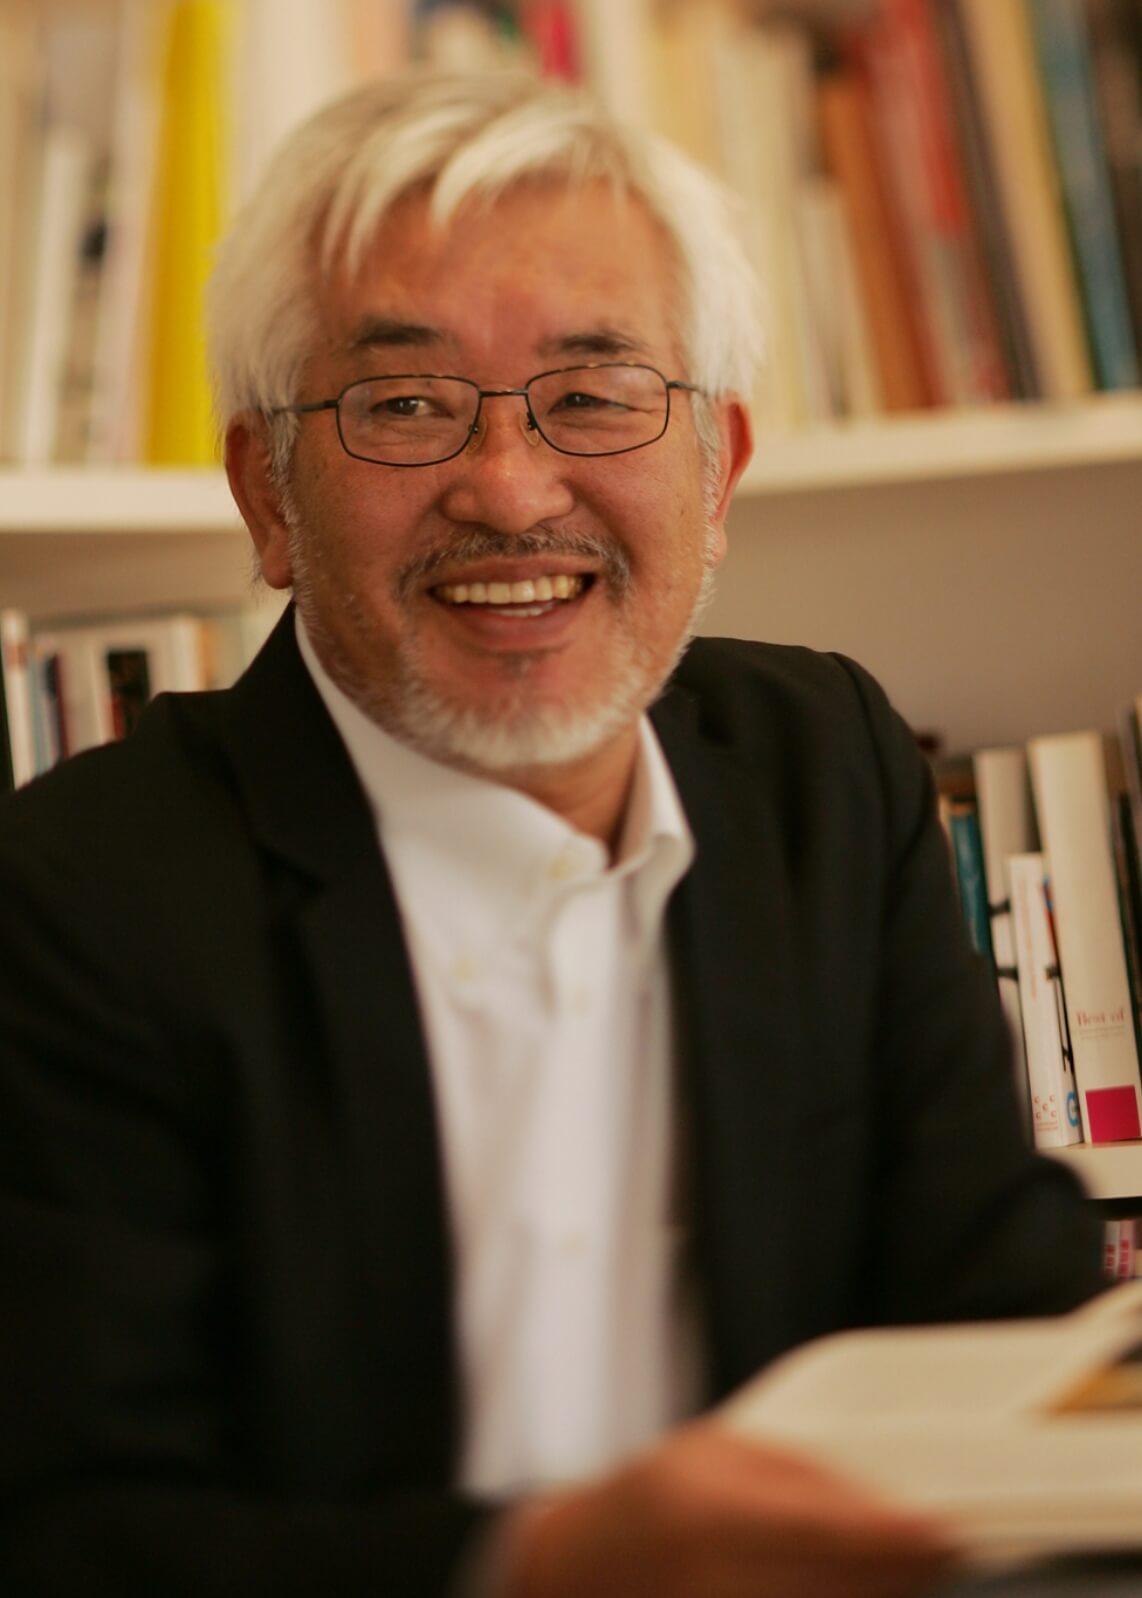 Interior Design Shigeru Uchida 1943 – 2016